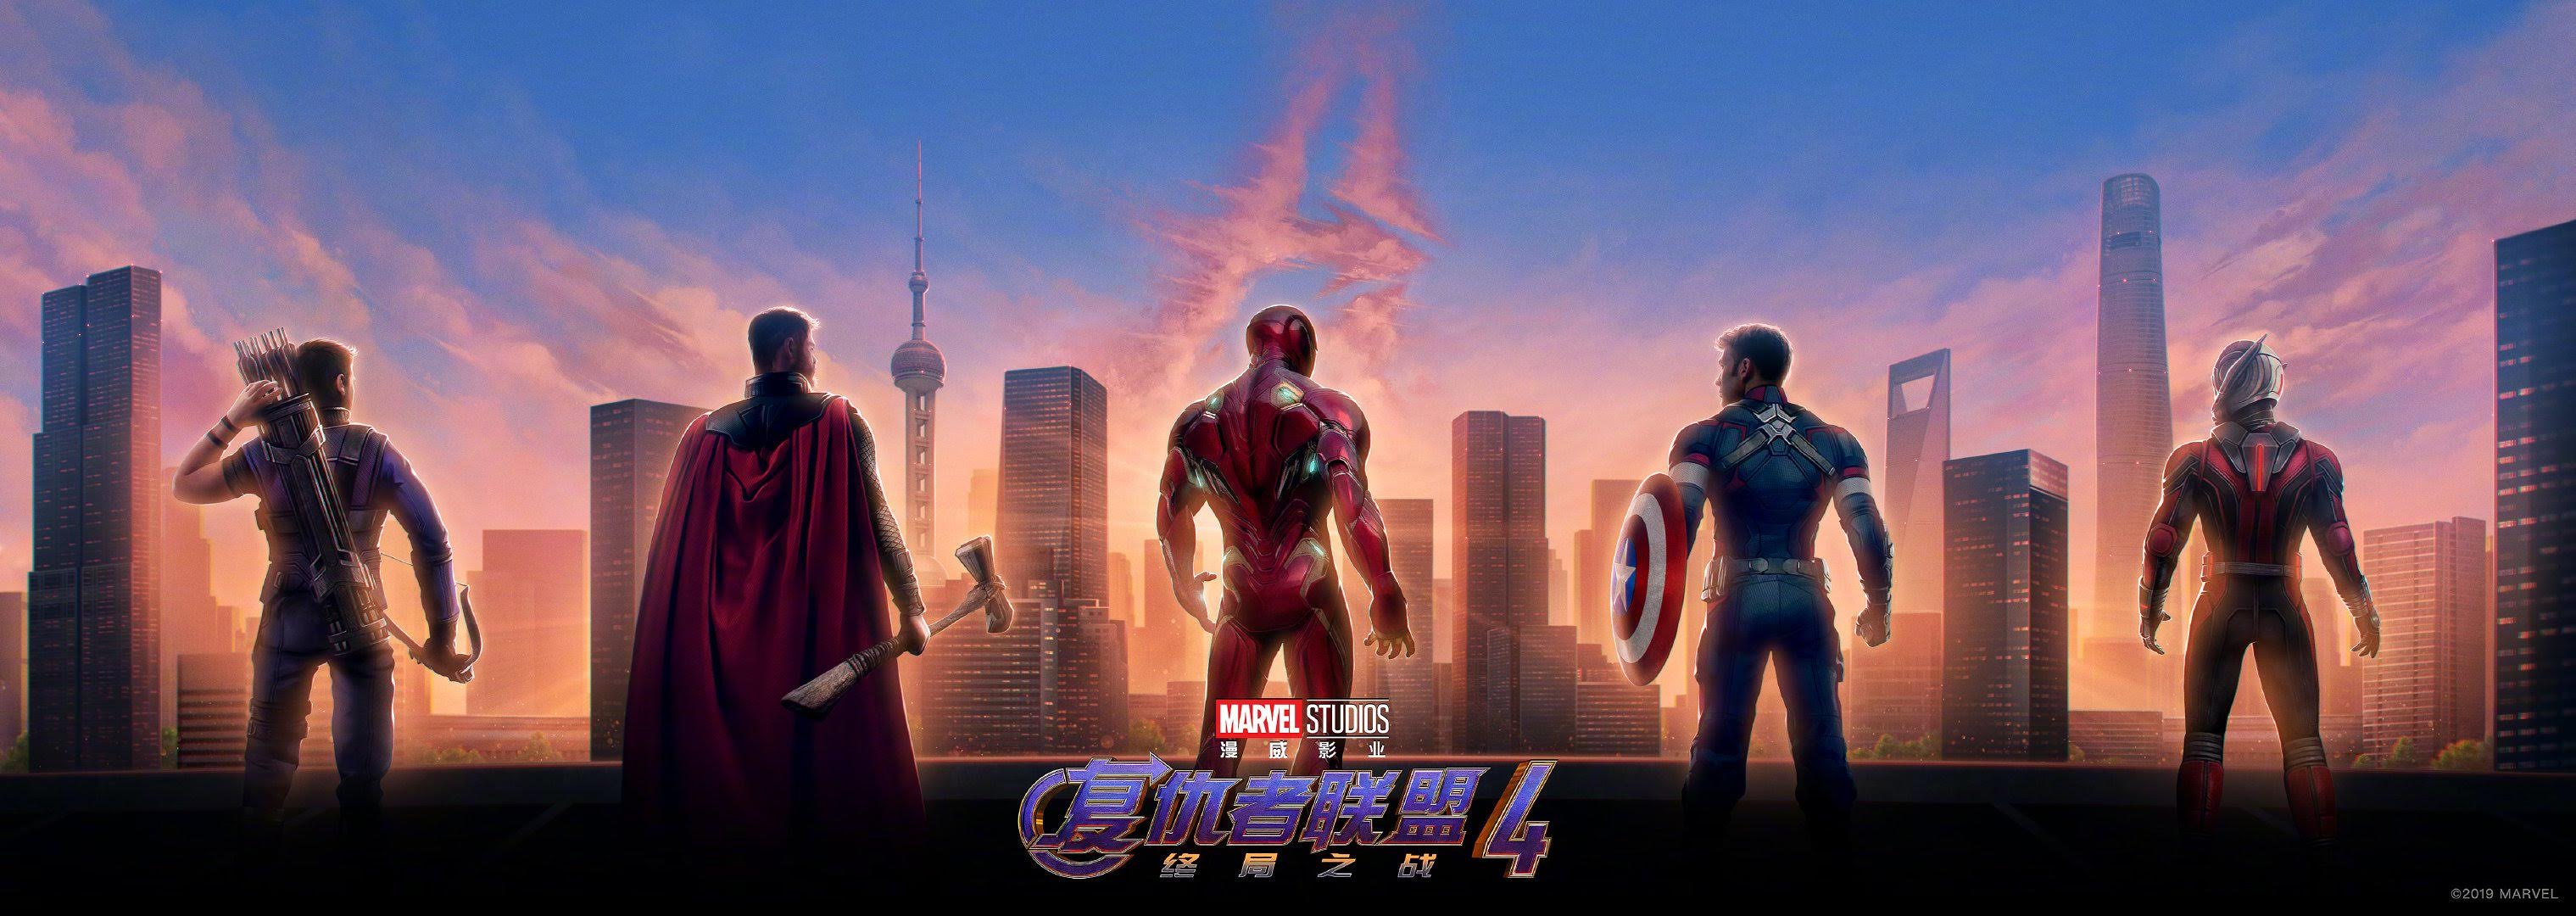 Avengers Endgame マーベルのインフィニティ サーガの完結編 アベンジャーズ エンドゲーム の5大ヒーローが 中国の上海を見守っているバナーとキャラクター ポスター Cia Movie News